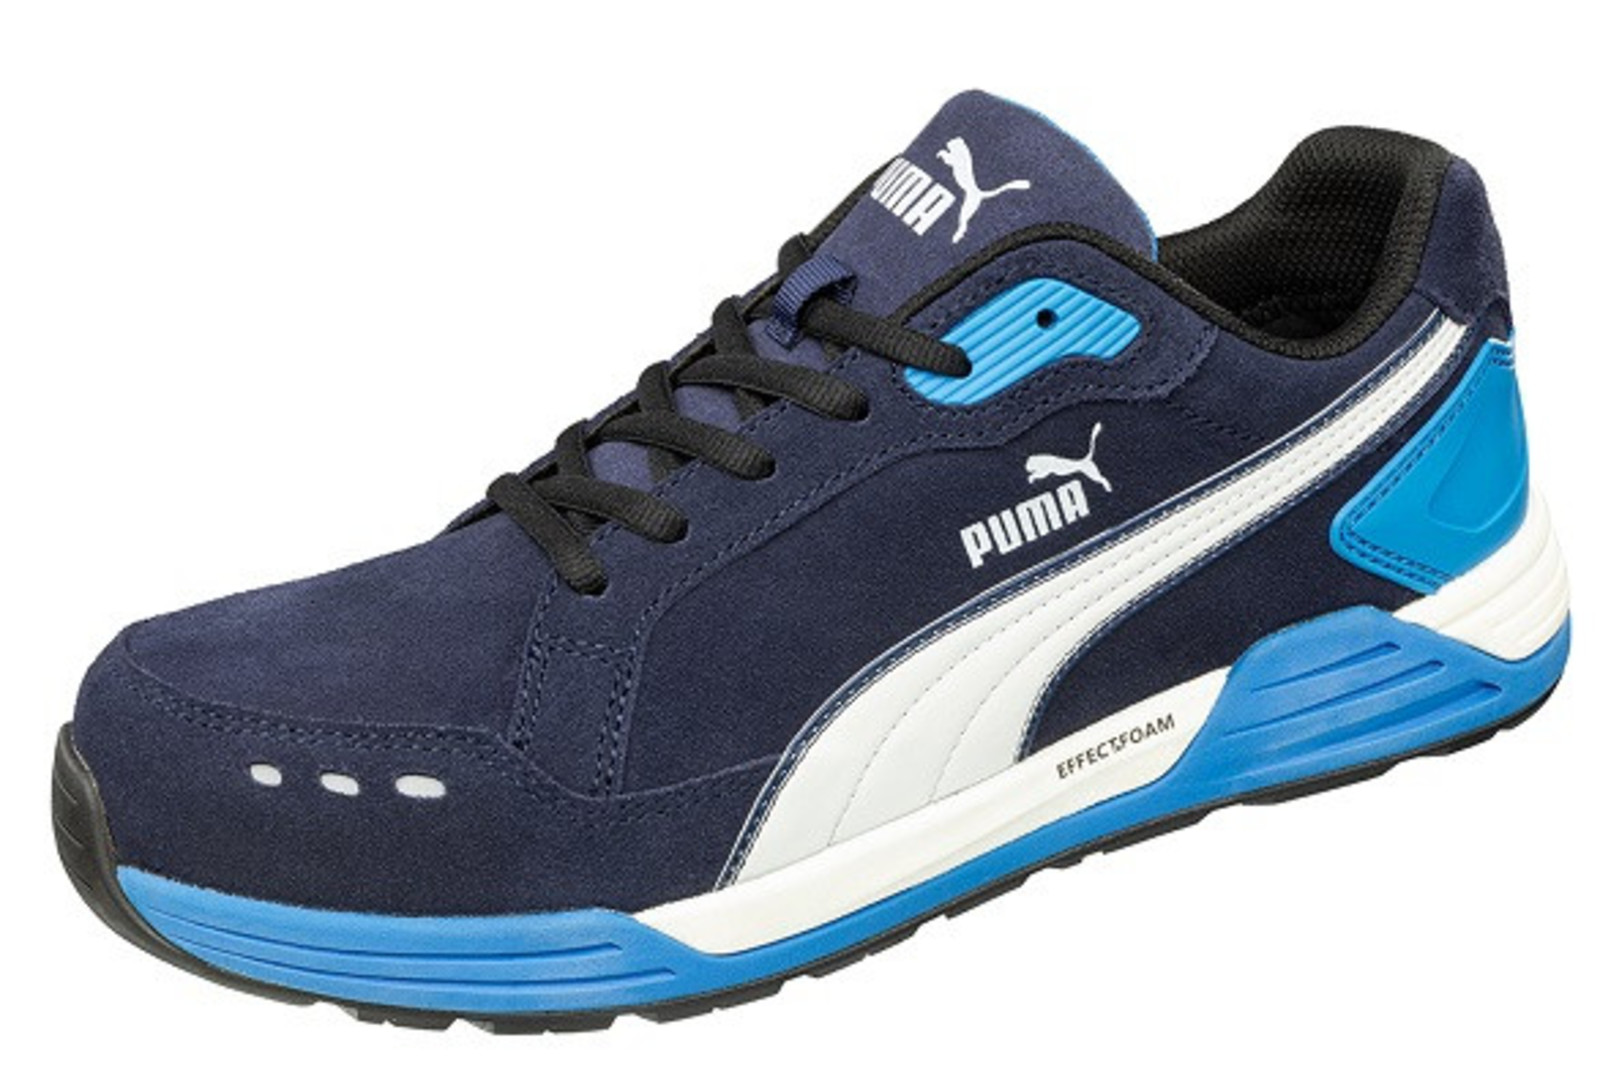 Bezpečnostná obuv Puma Airtwist S3 - veľkosť: 41, farba: modrá